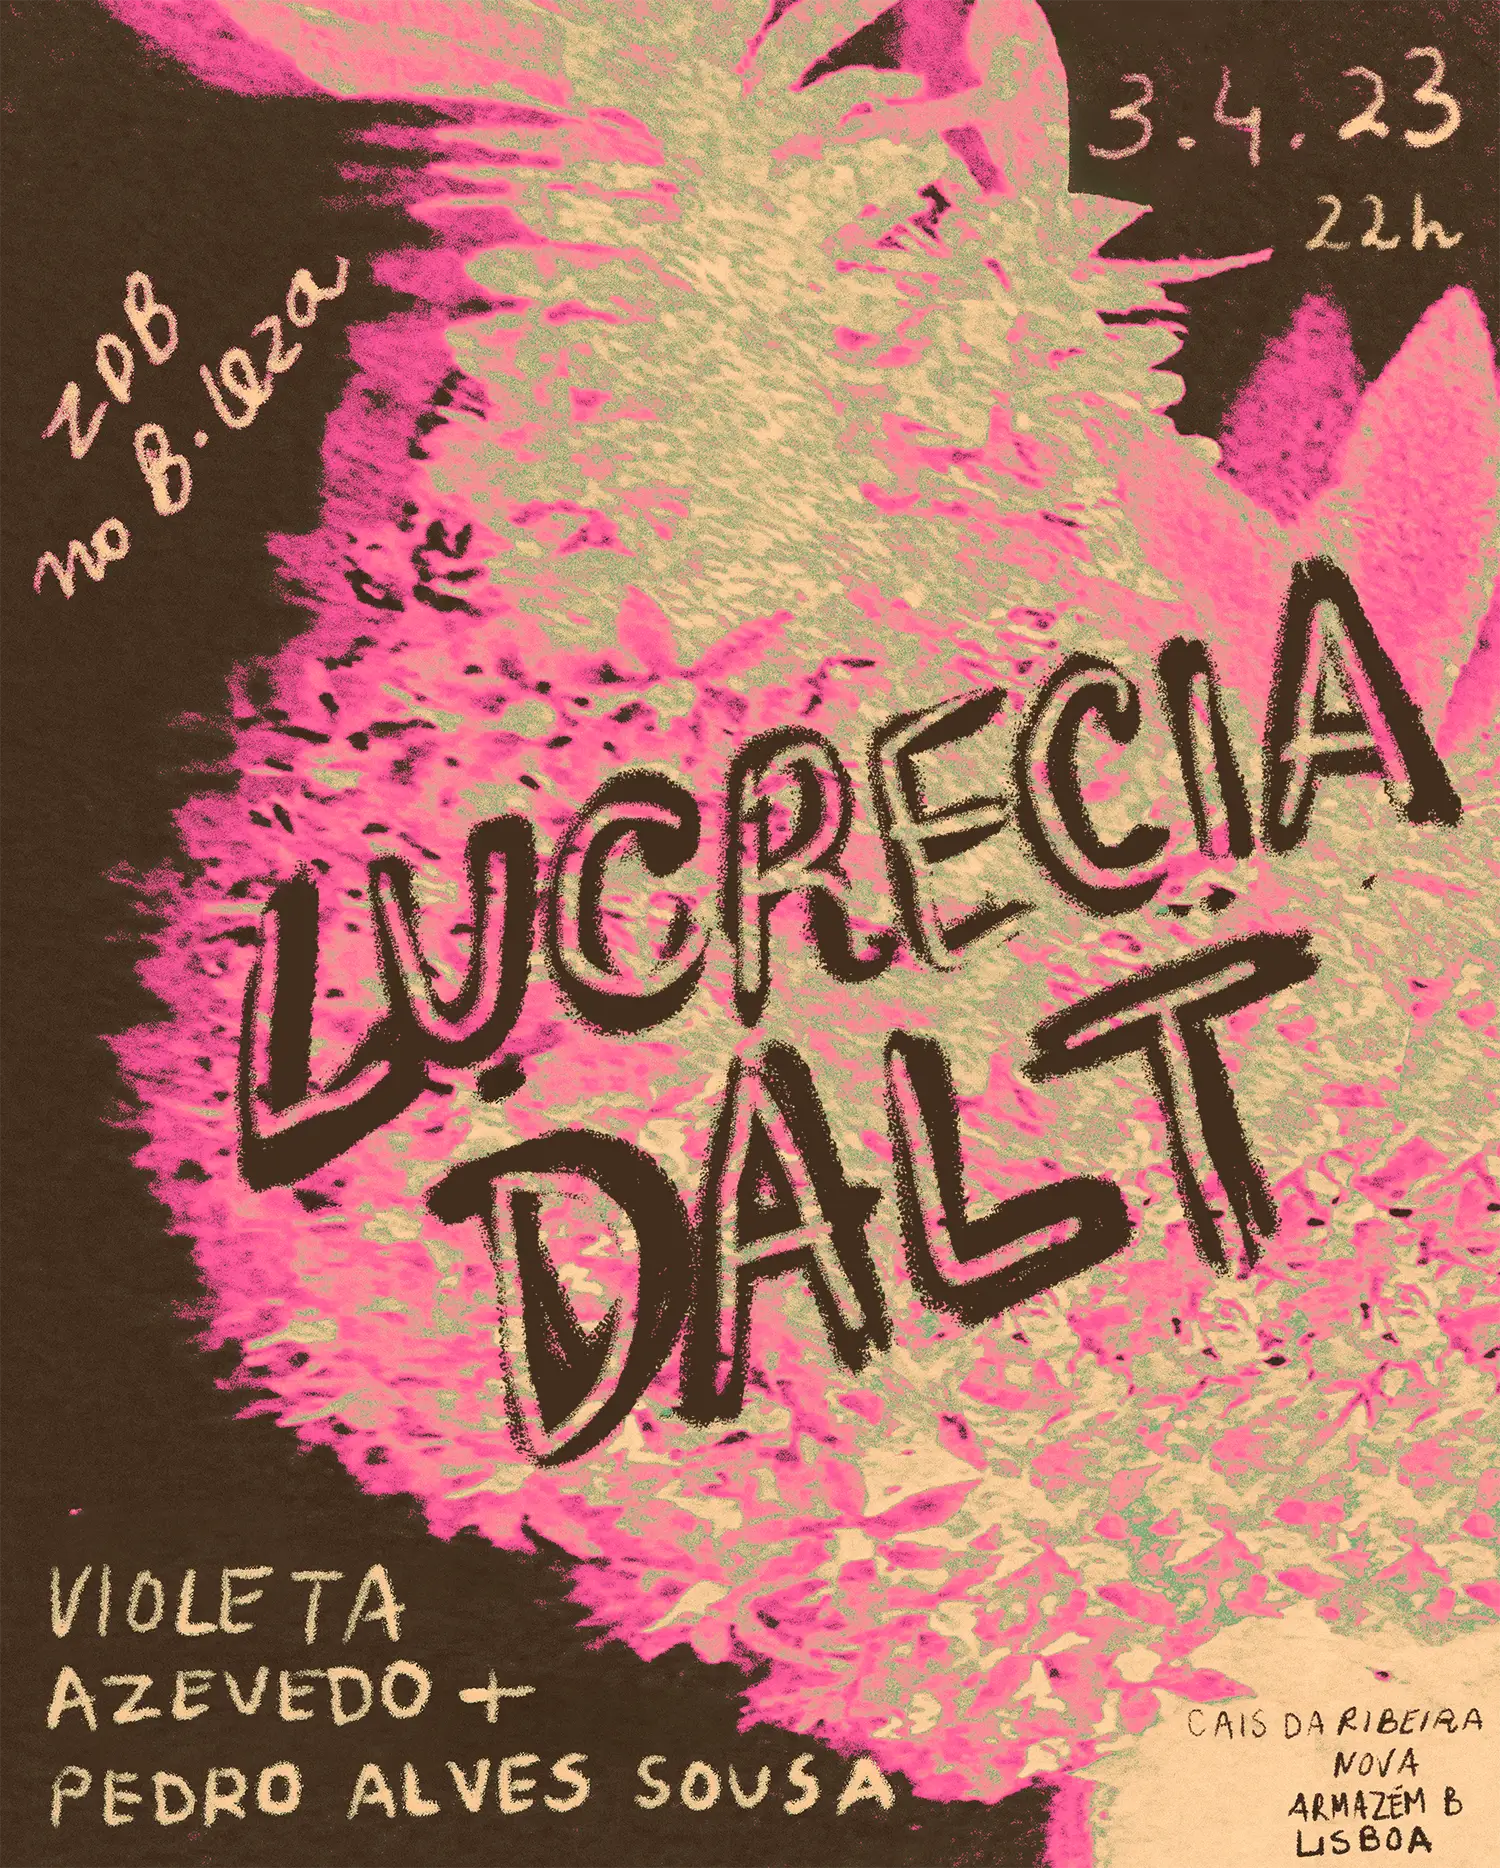 Lucrecia Dalt ⟡ Pedro Alves Sousa & Violeta Azevedo